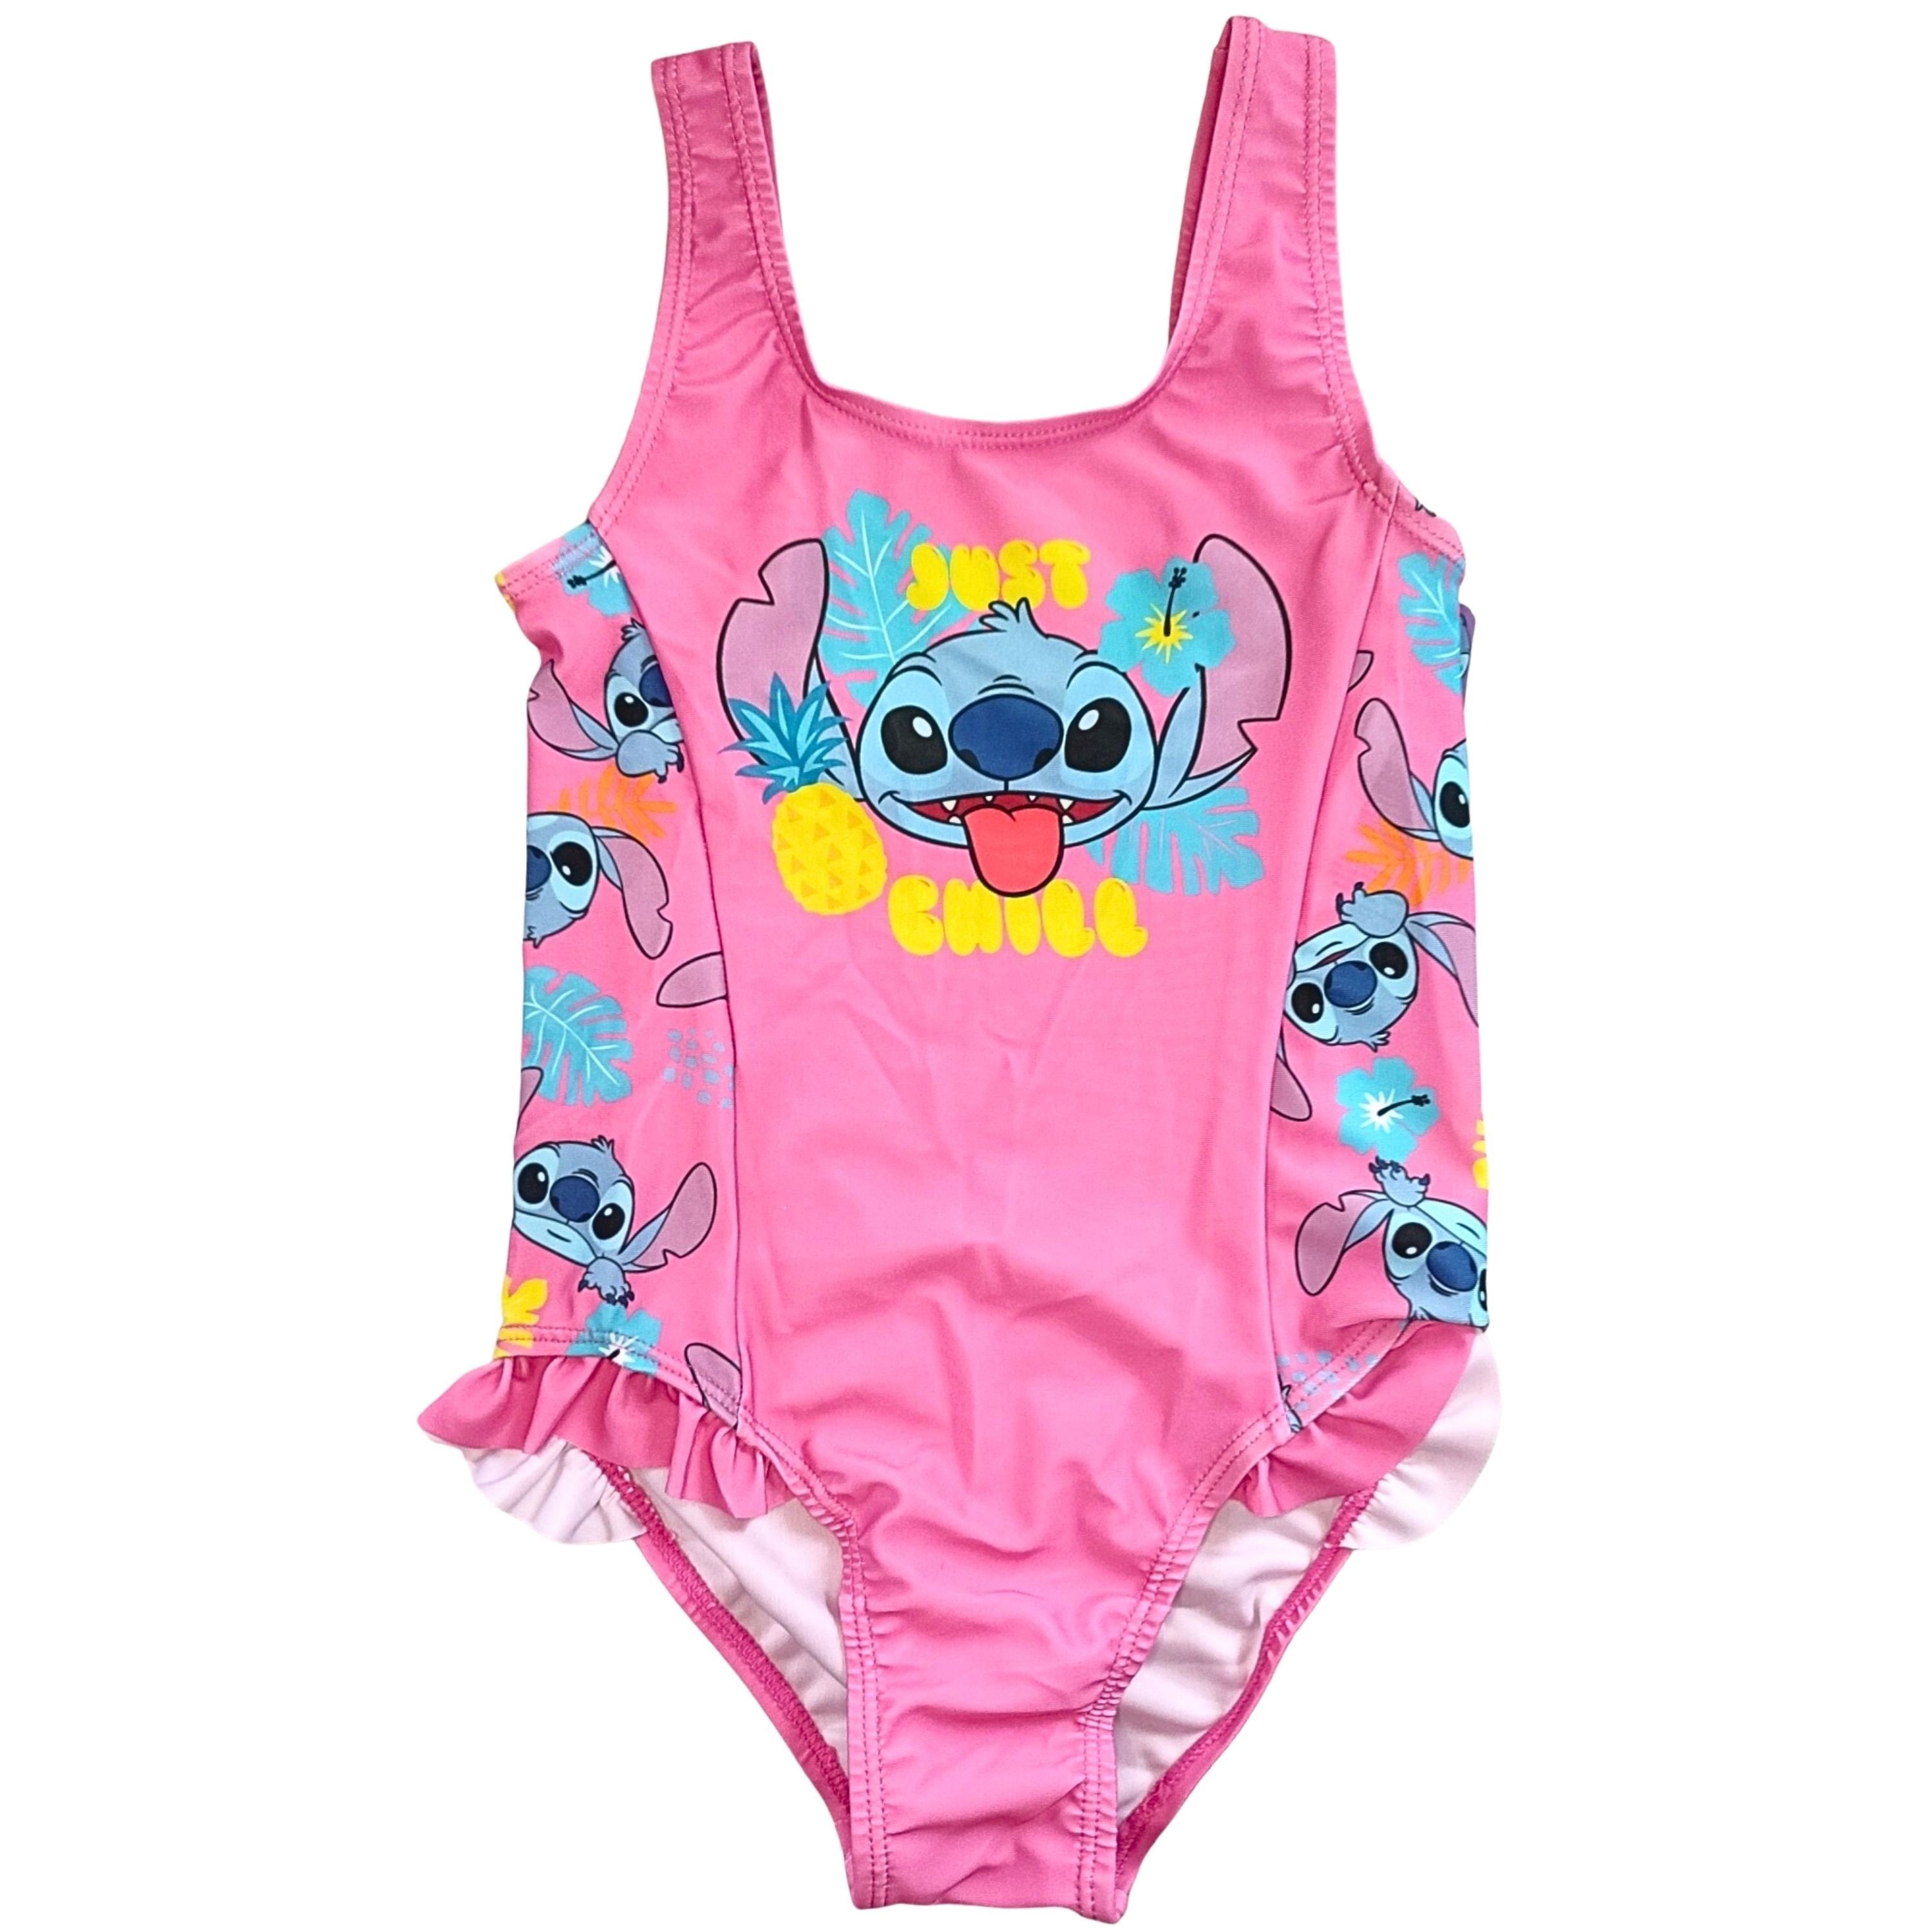 Lilo & Stitch Badeanzug JUST CHILL Schwimmanzug für Mädchen Gr. 92 - 128 cm